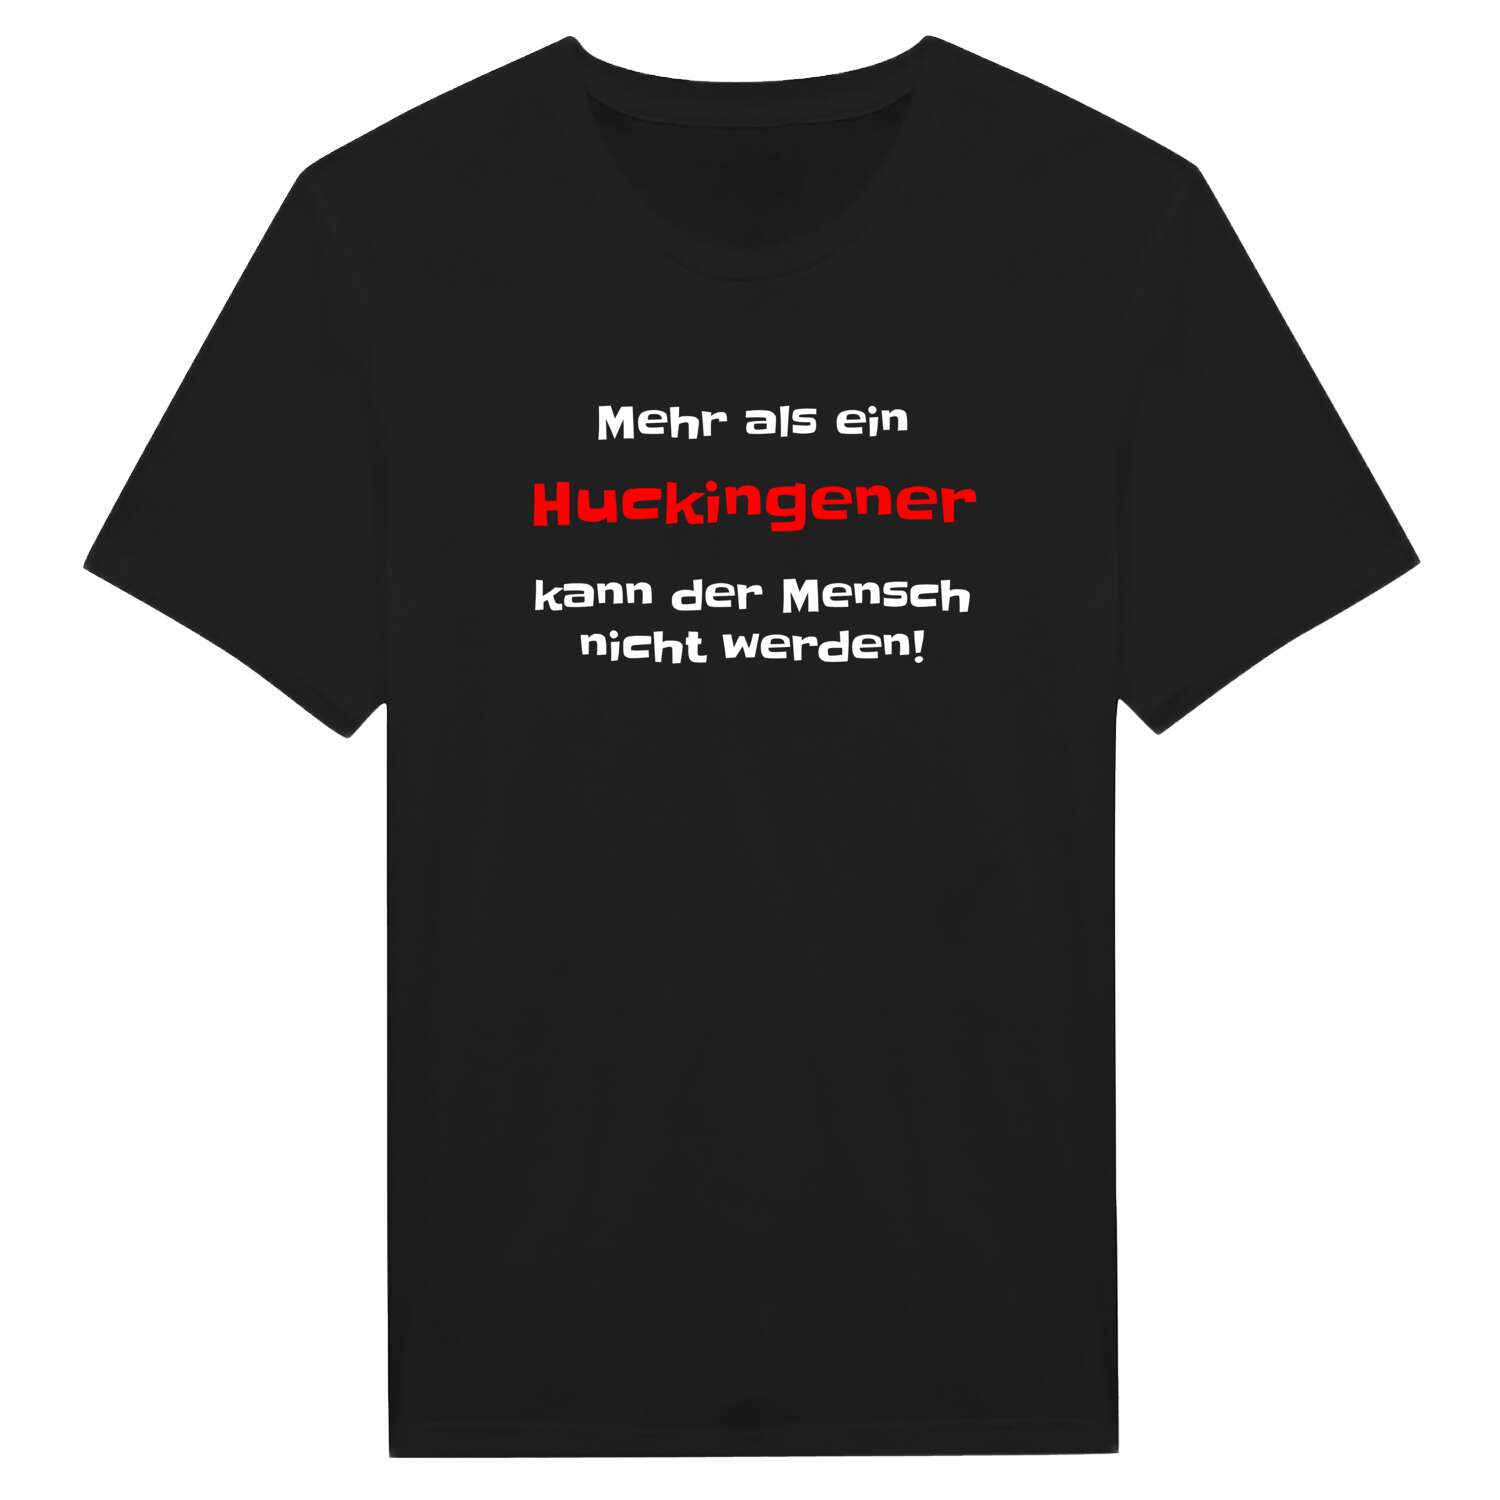 Huckingen T-Shirt »Mehr als ein«